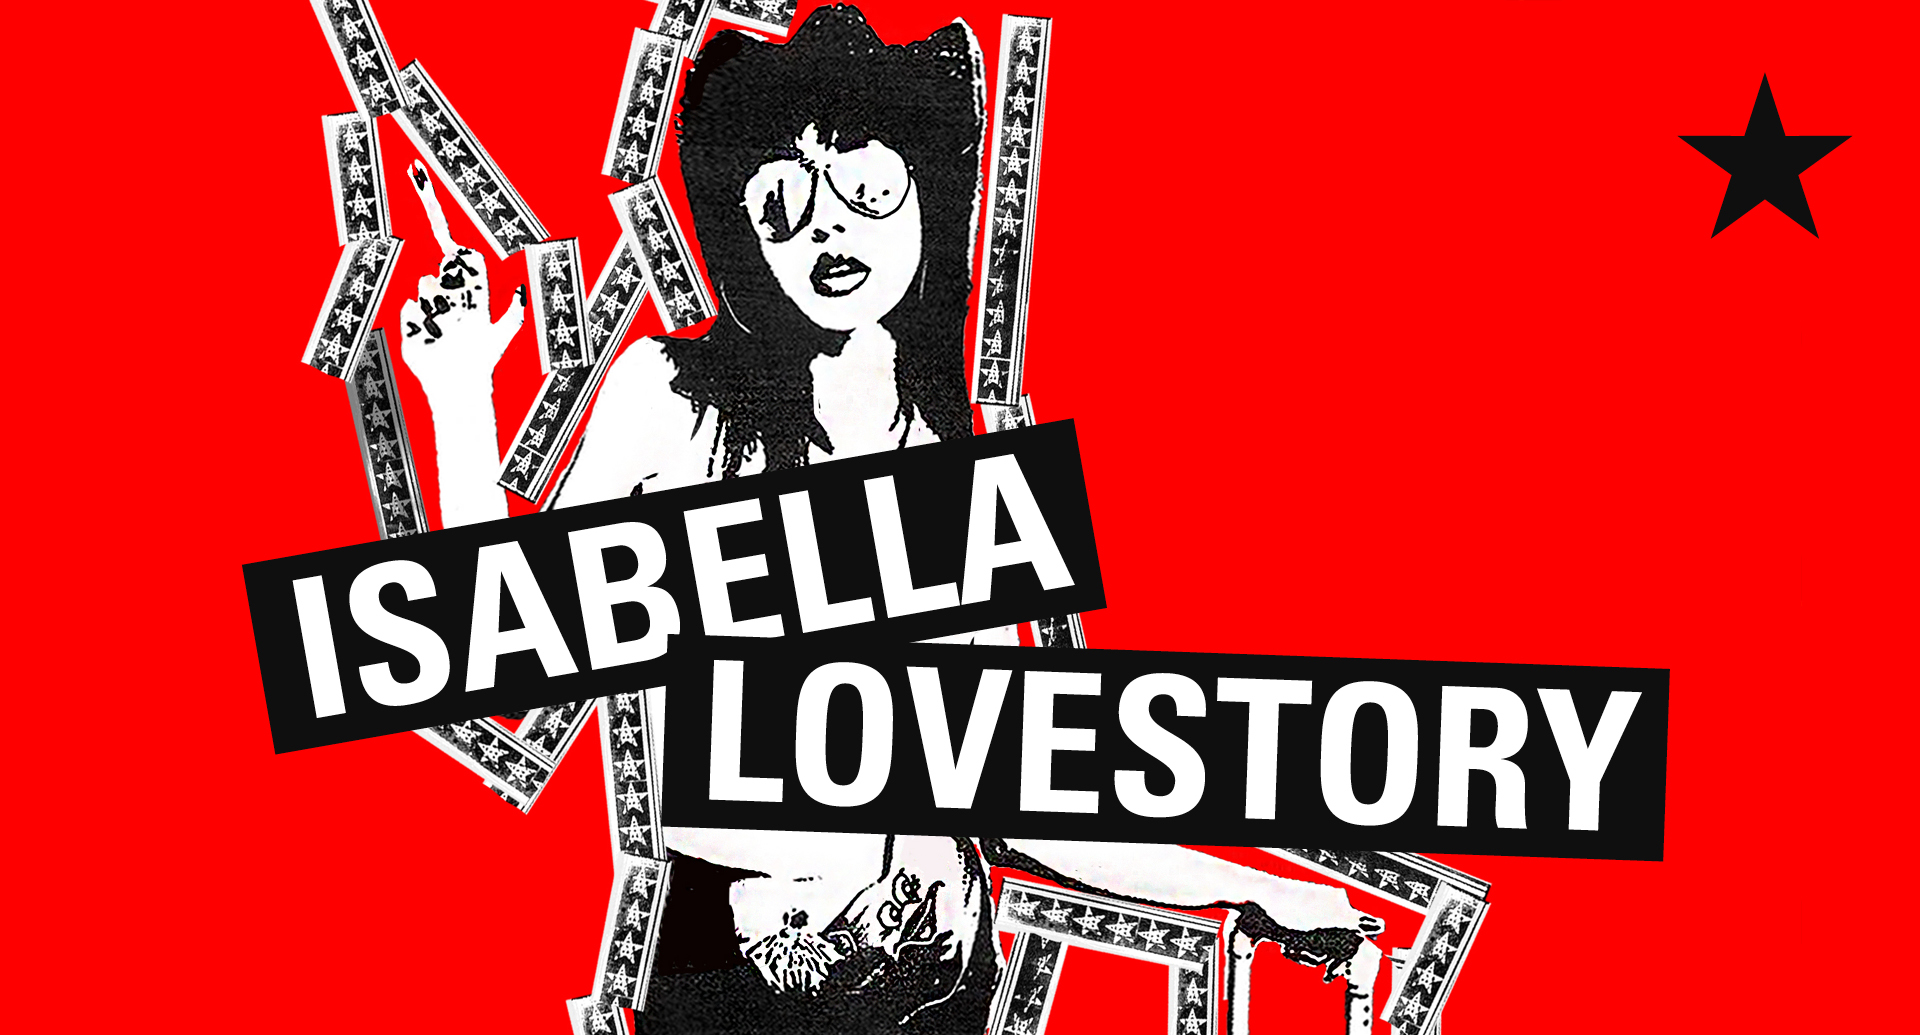 Isabella Lovestory | Wien am 13. June 2023 @ Das Werk.